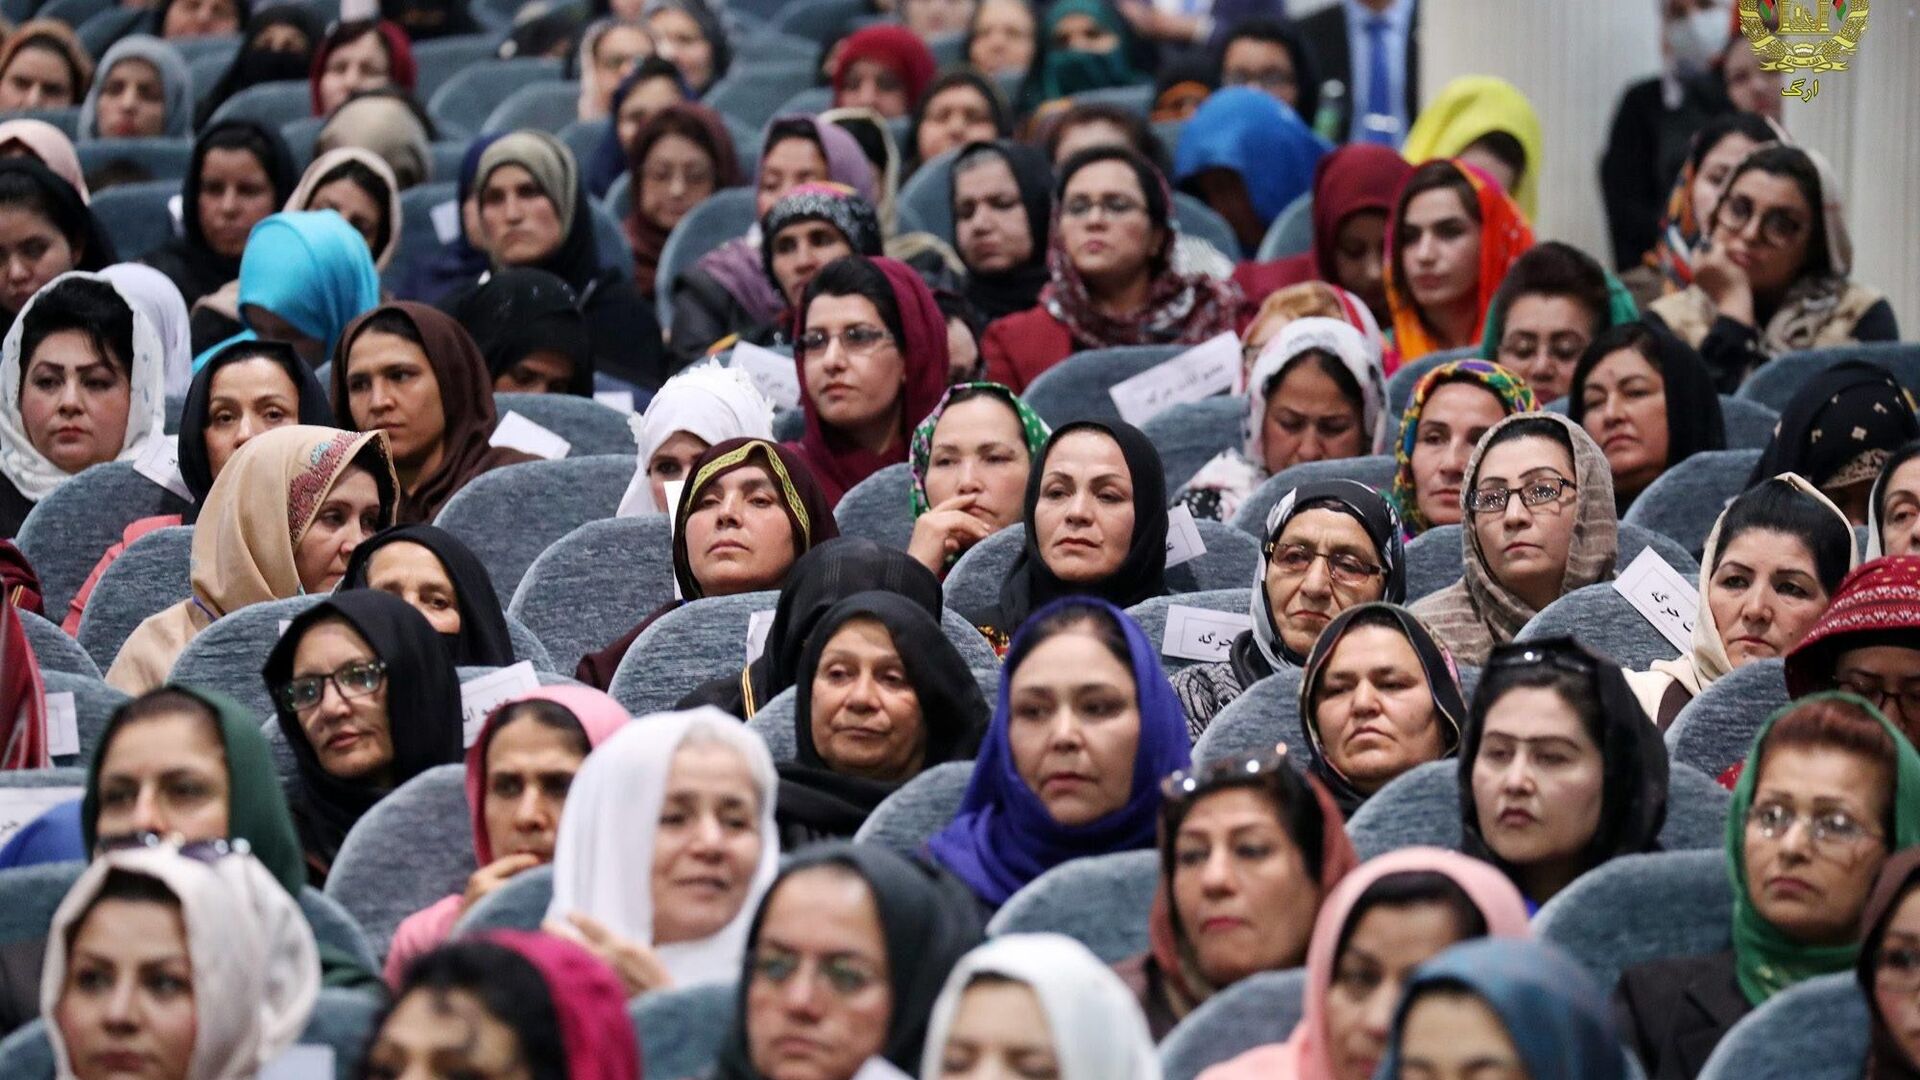 بازگشت کارکنان زن فرودگاه کابل به سرکارشان با حجاب اسلامی + عکس  - اسپوتنیک ایران  , 1920, 15.09.2021